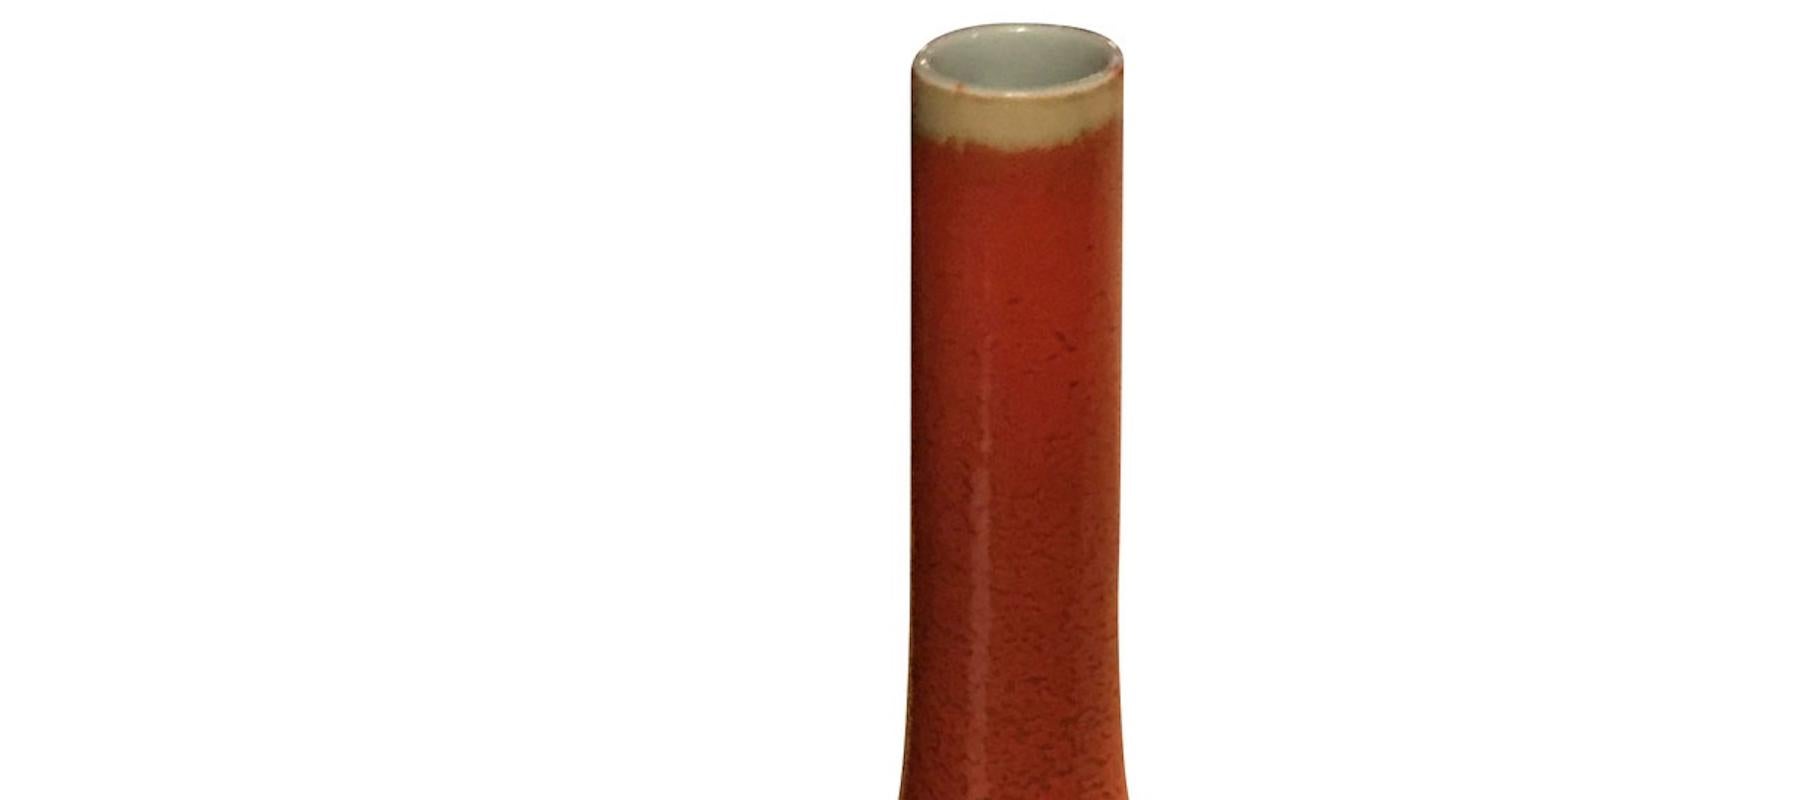 Chinese orange glazed thin necked porcelain vase.
Sits nicely with S5127.